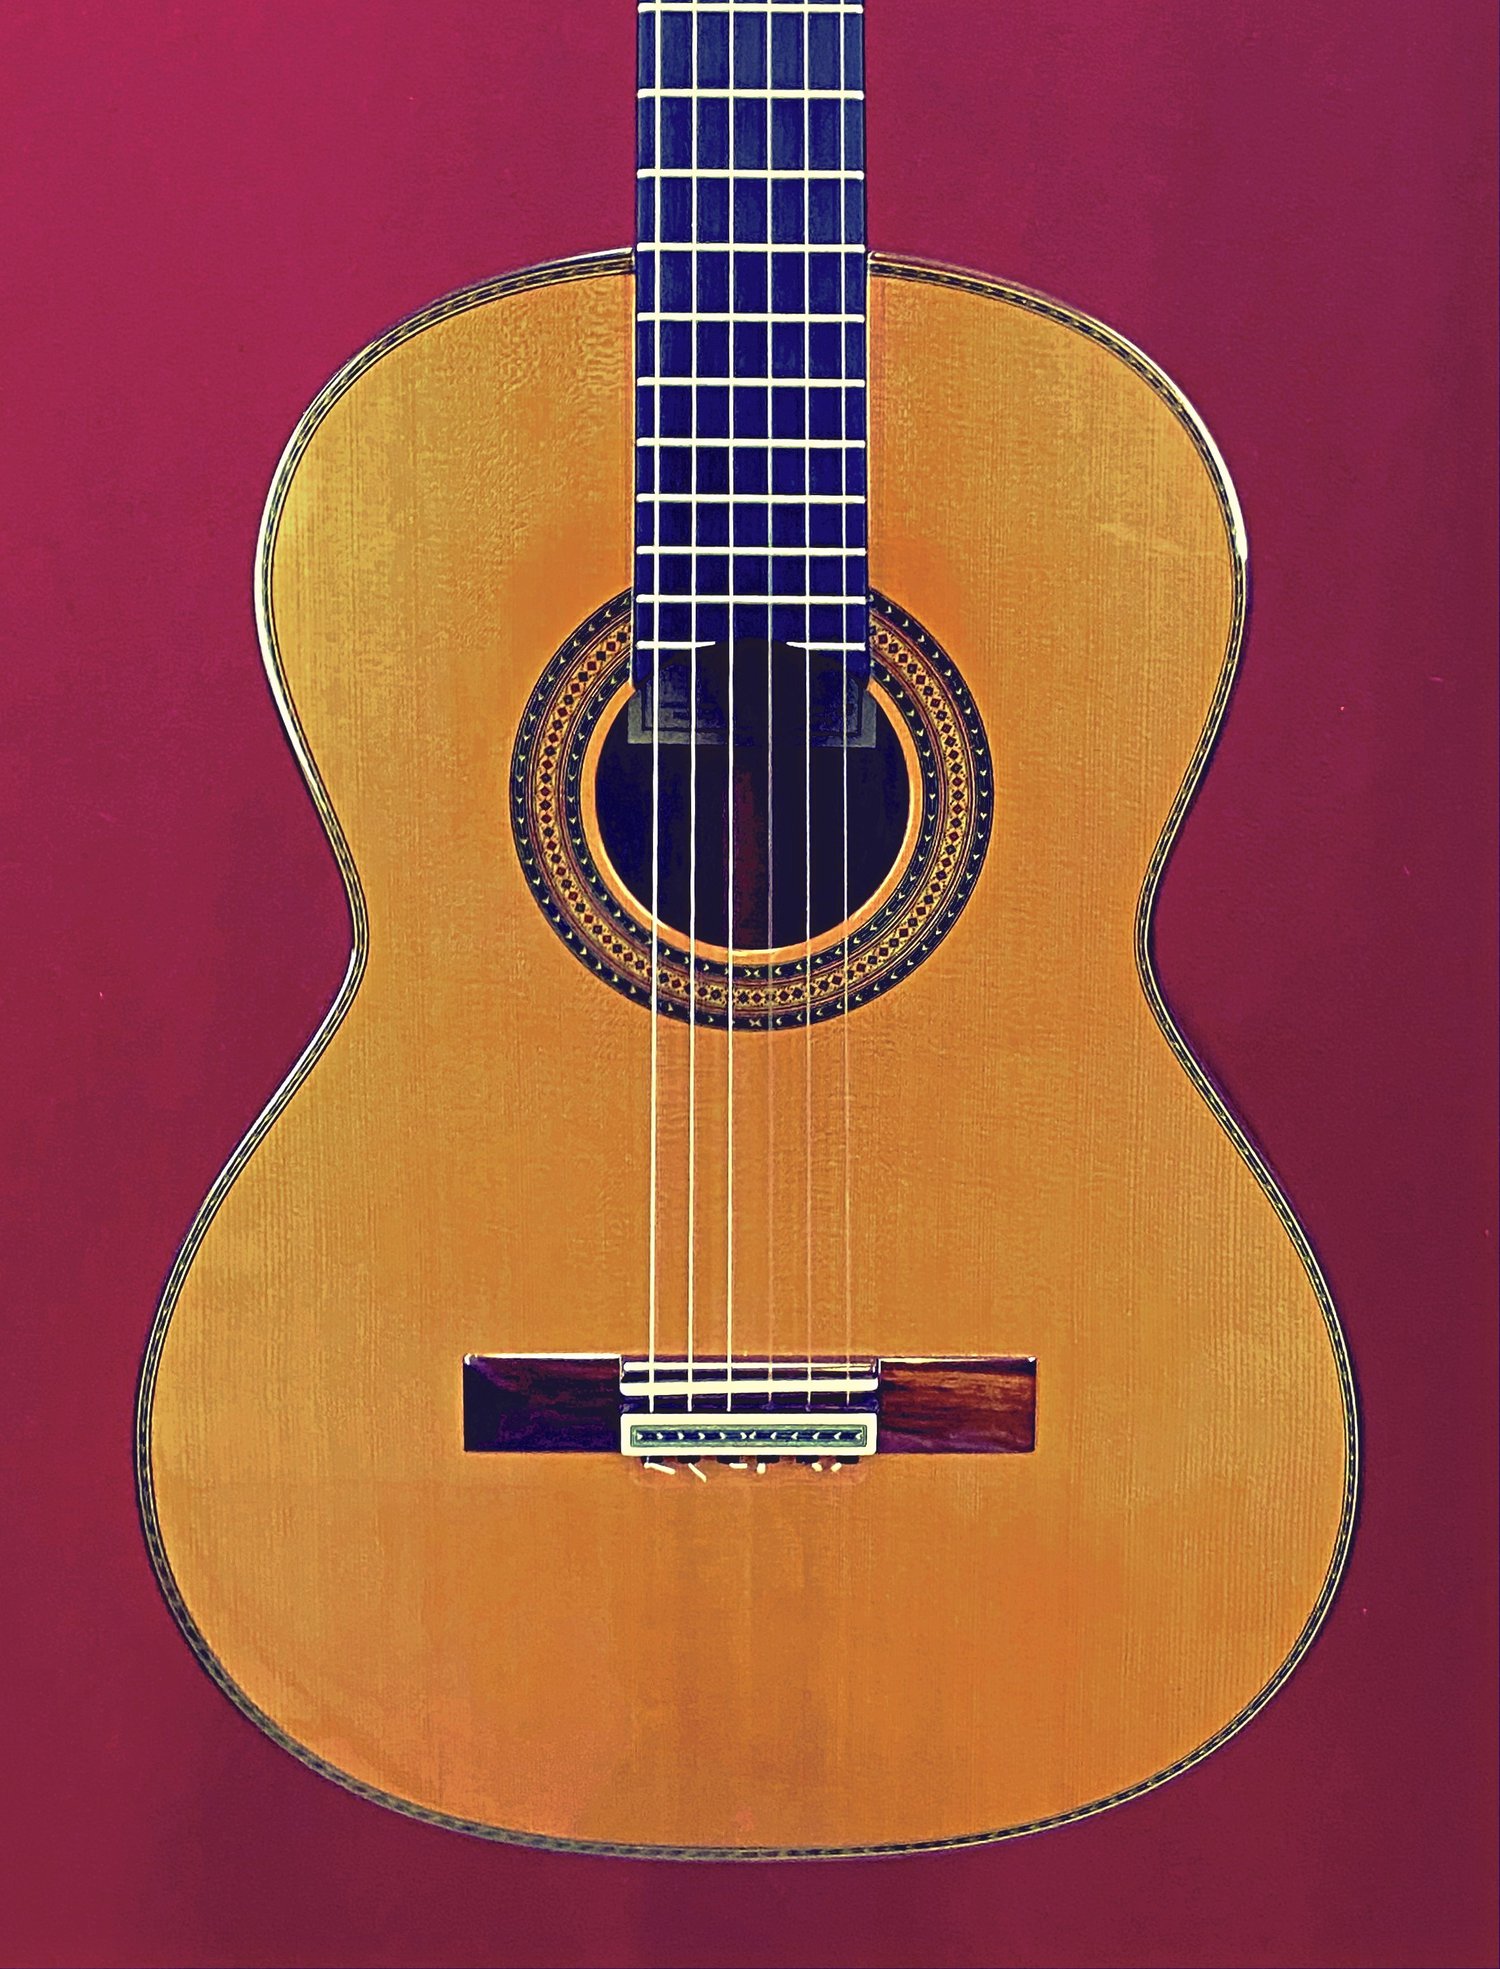 2022 Paulino Bernabe Model 15 guitar